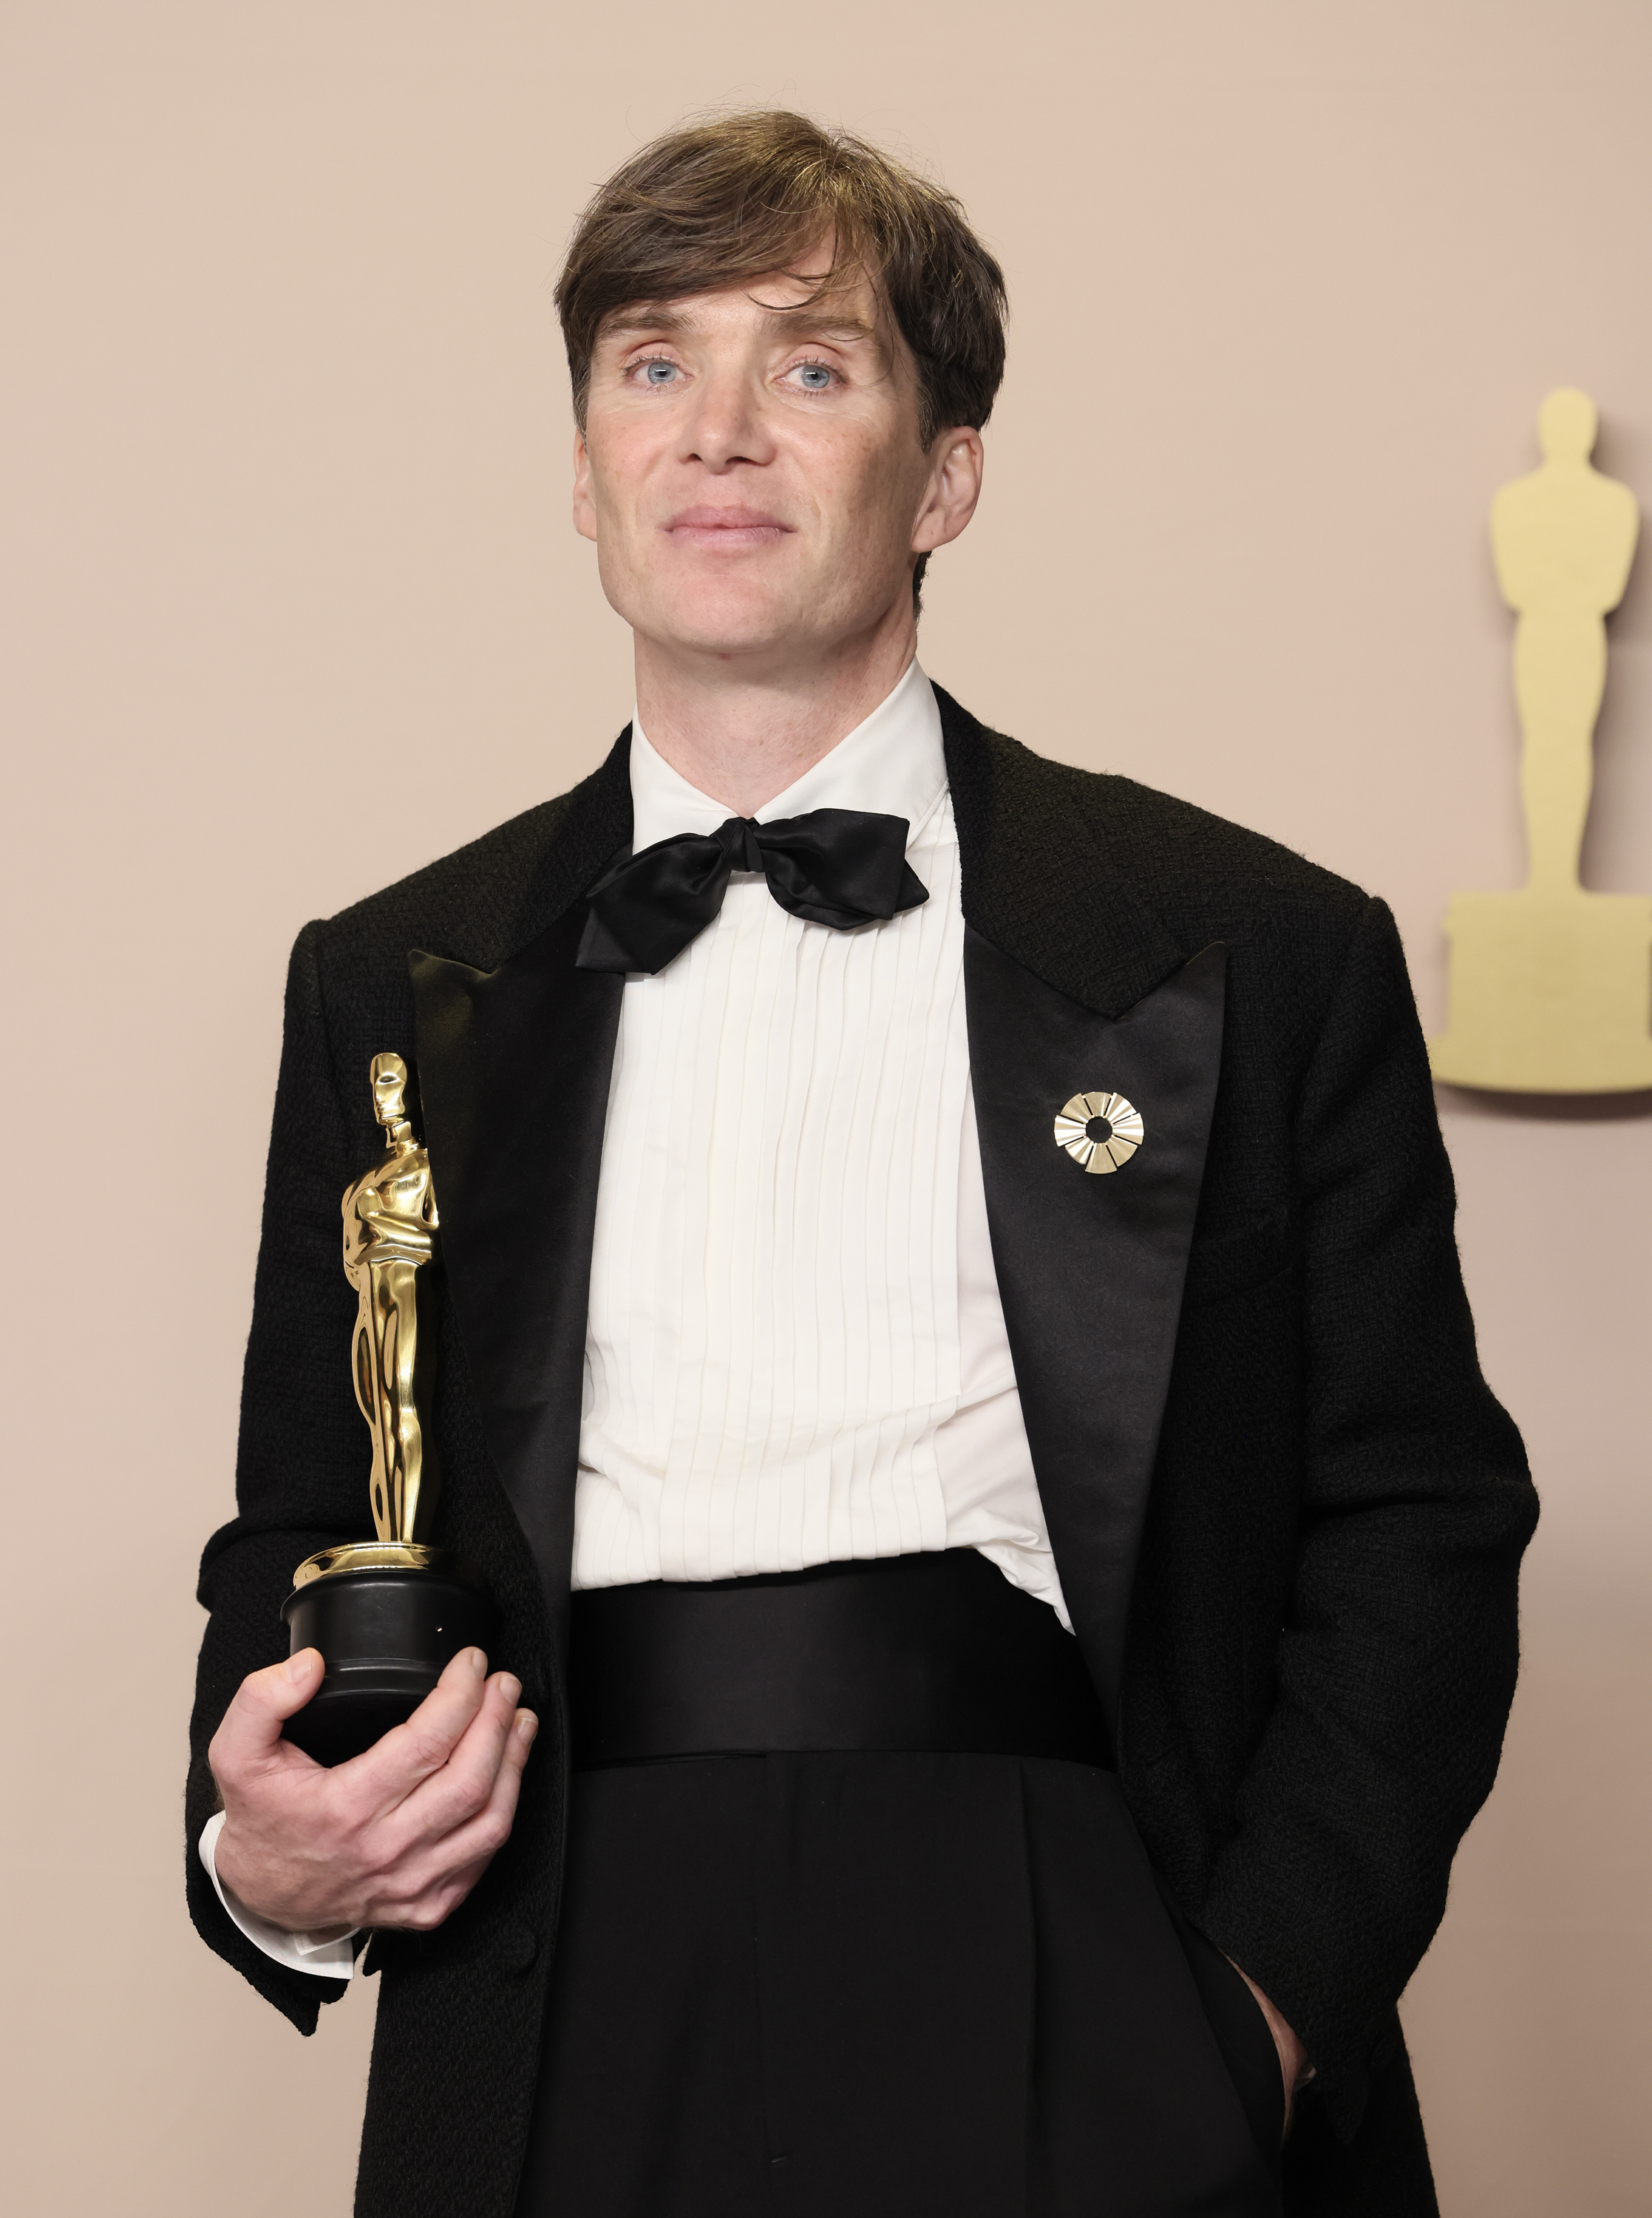 Cillian rocks a tuxedo as he poses with his Oscar